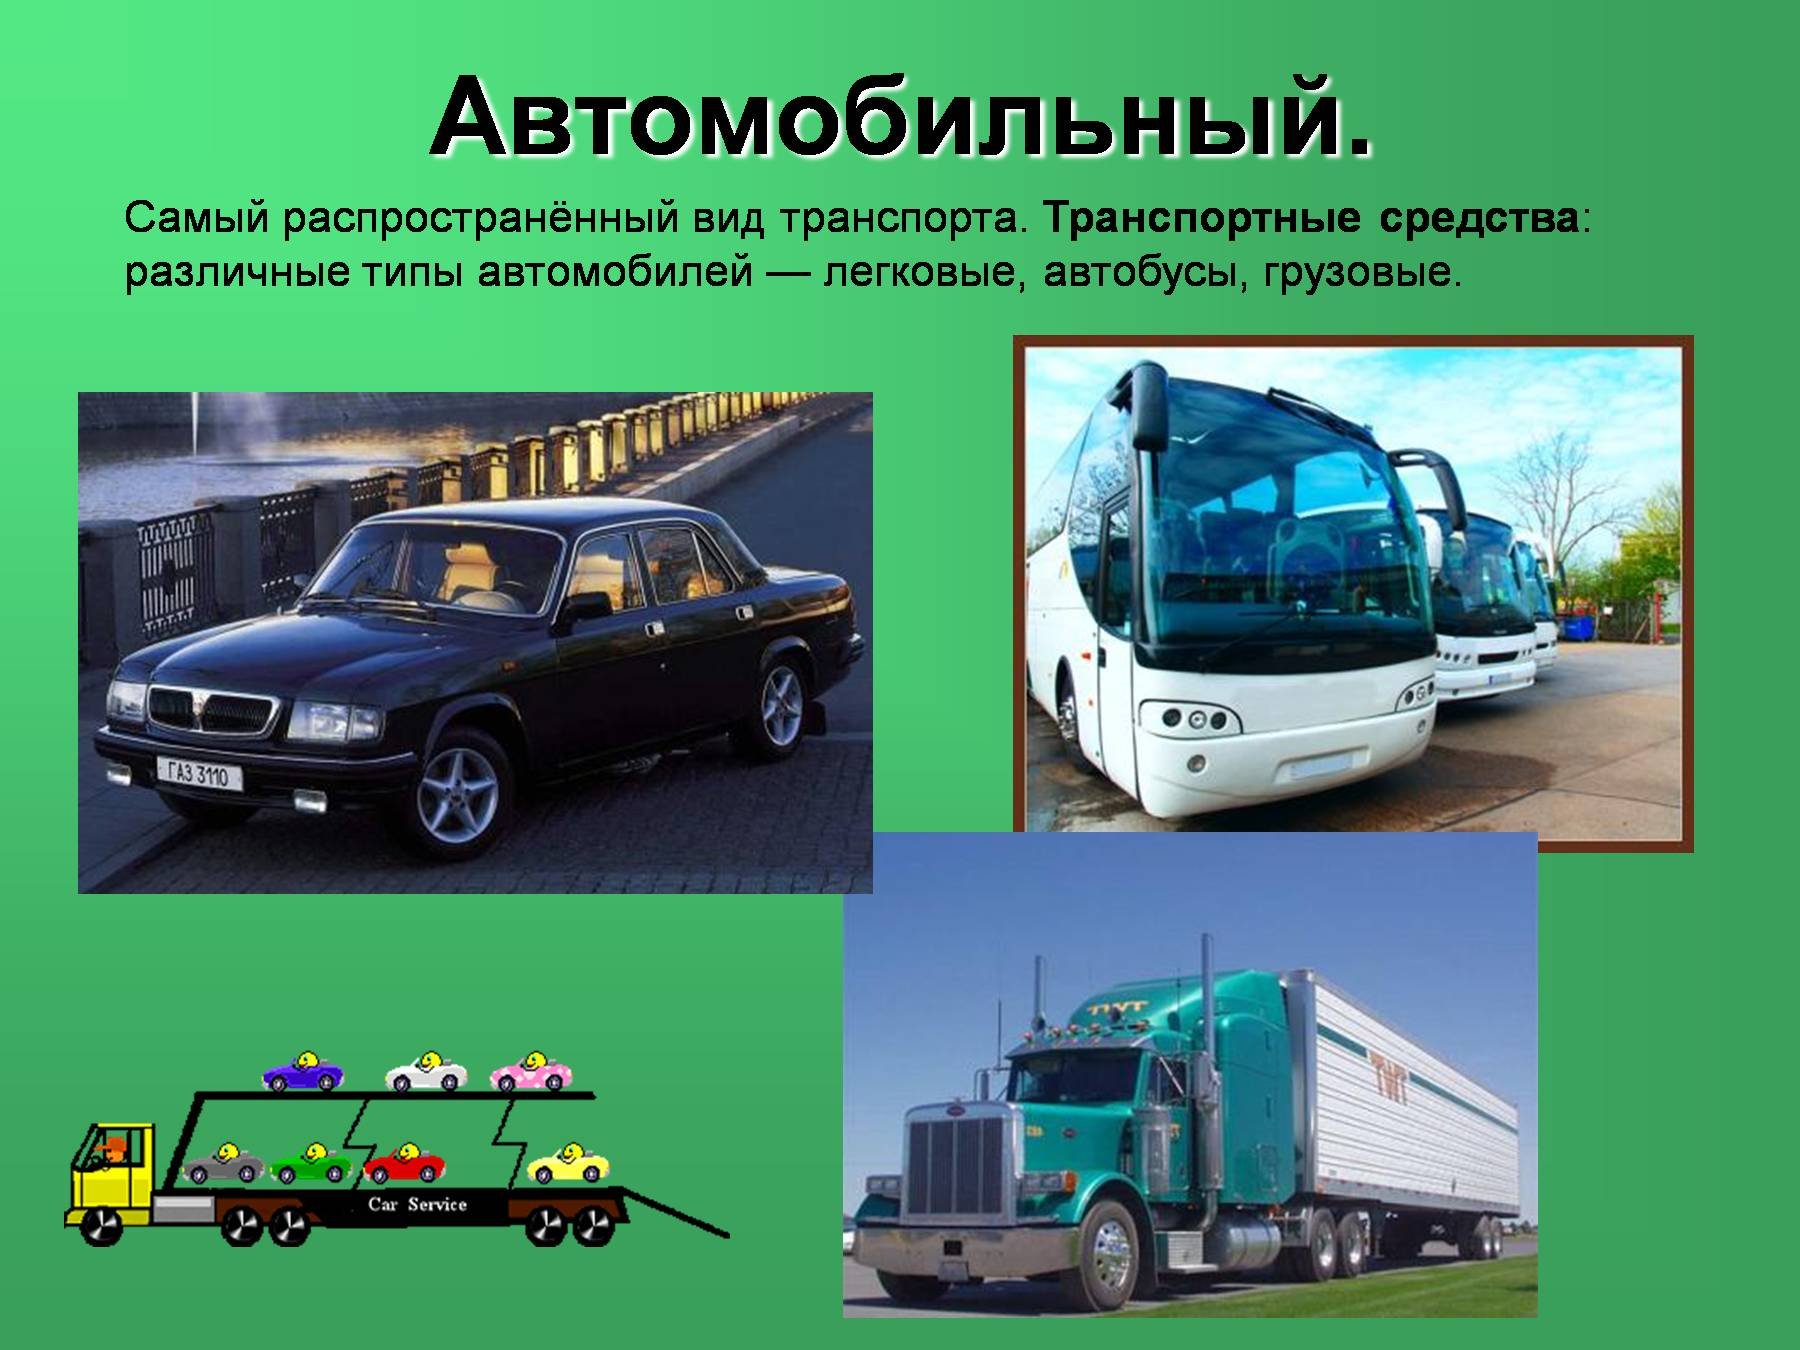 Реализует транспортные средства. Виды автомобильного транспорта. Транспортные средства. Виды транспорта автомобиль. Автомобильный транспорт слайд.